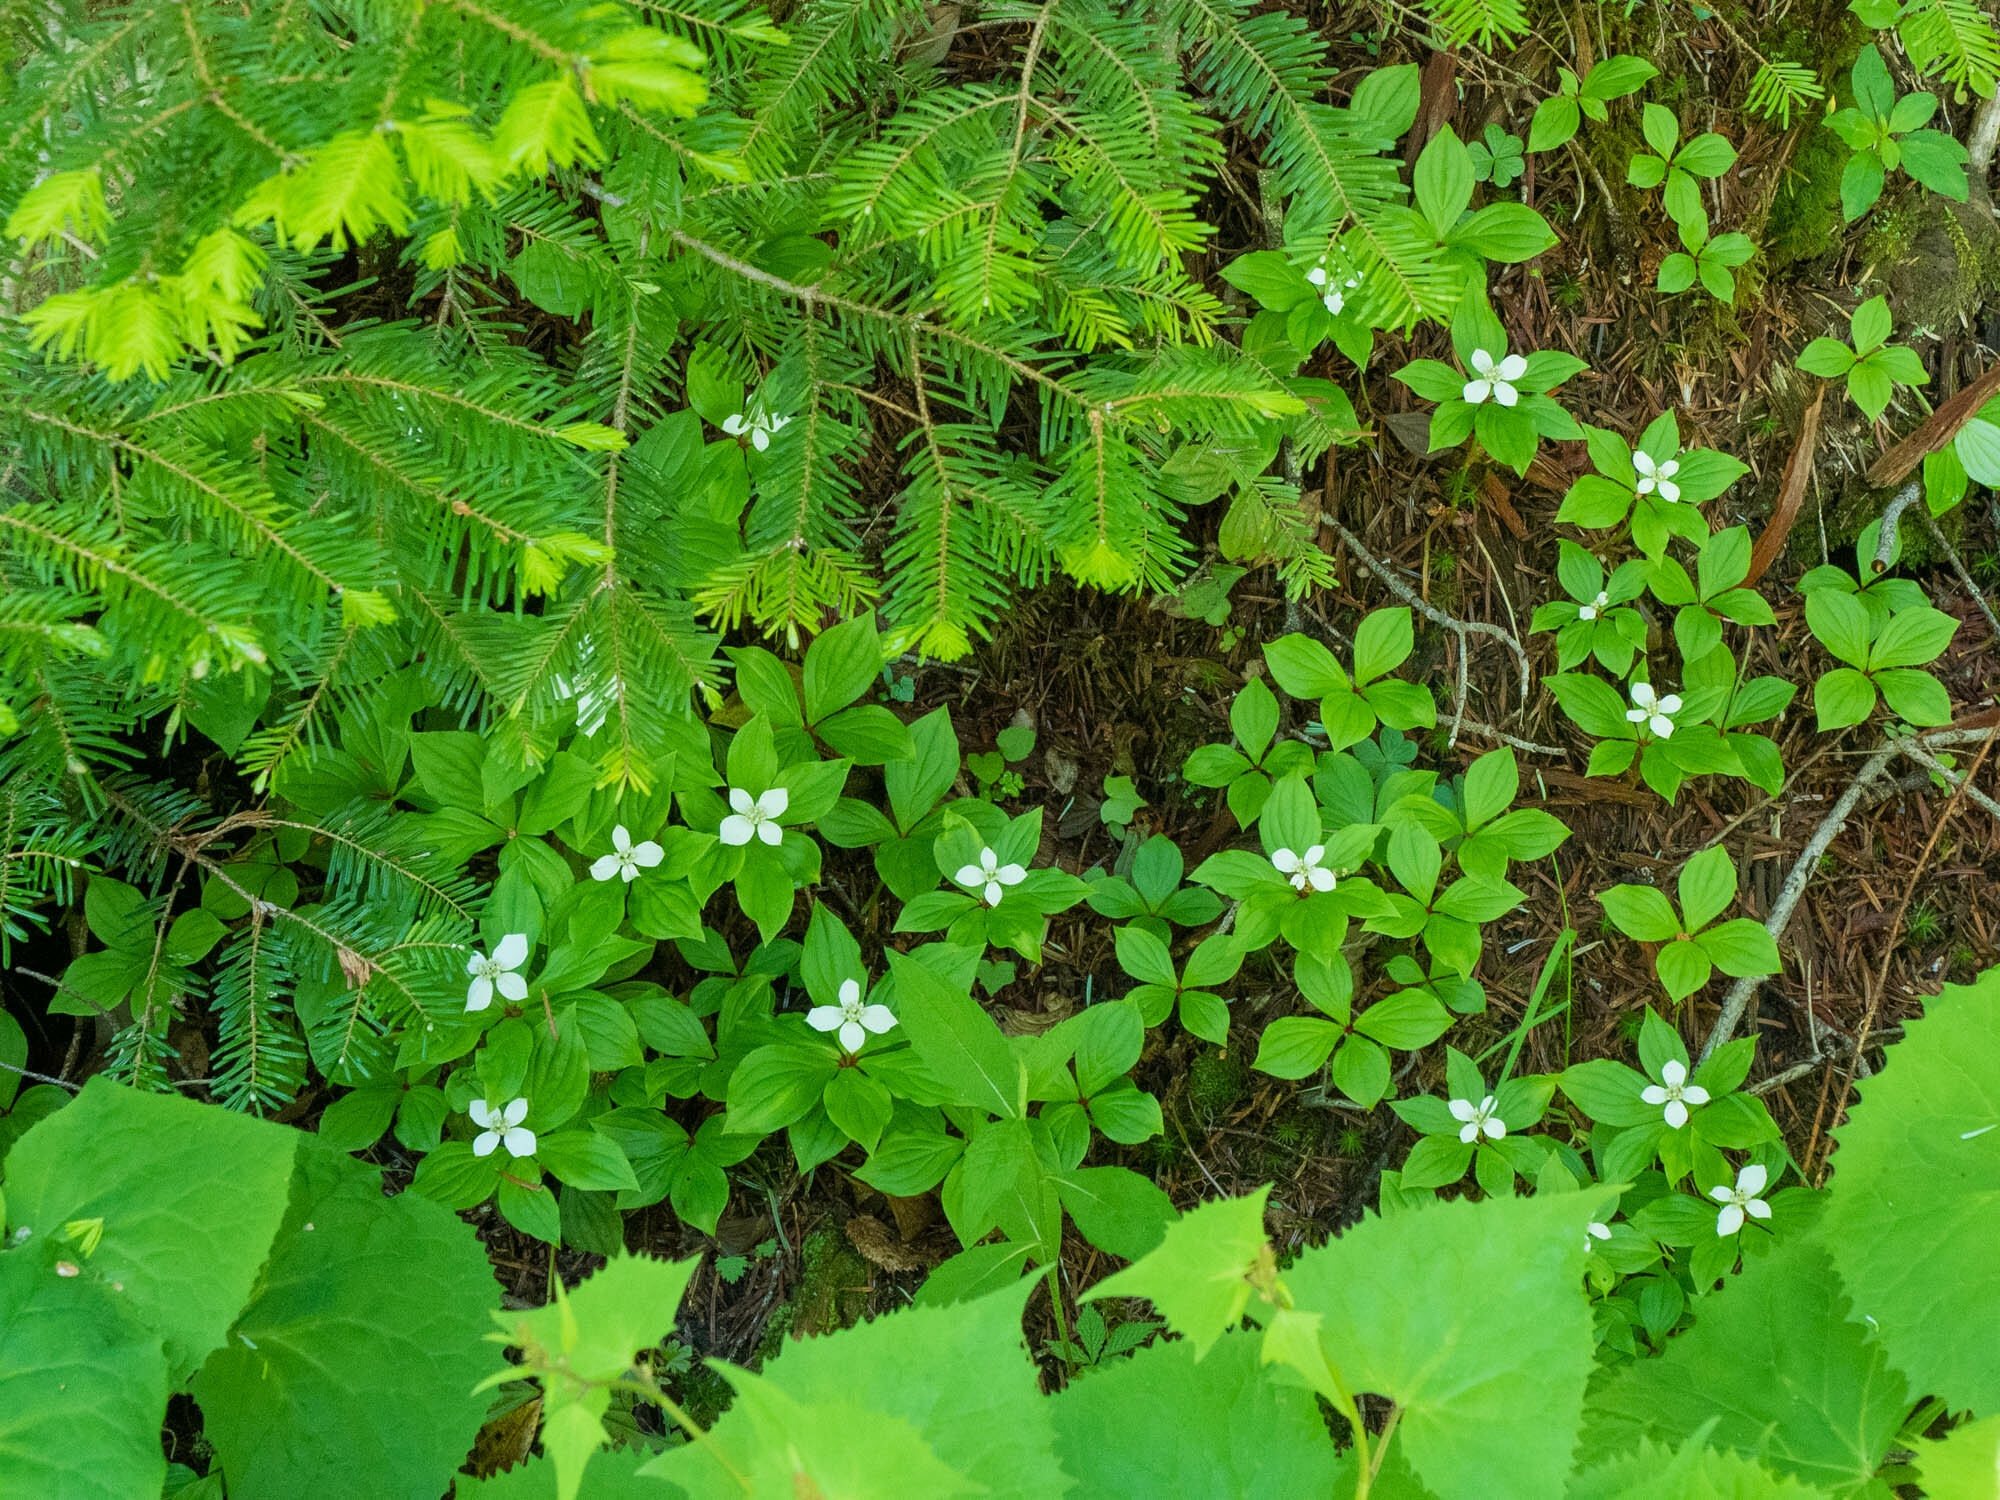 登山口に向かう途中、足下にはたくさんの小花が咲いている(コゼンタチバナ)。